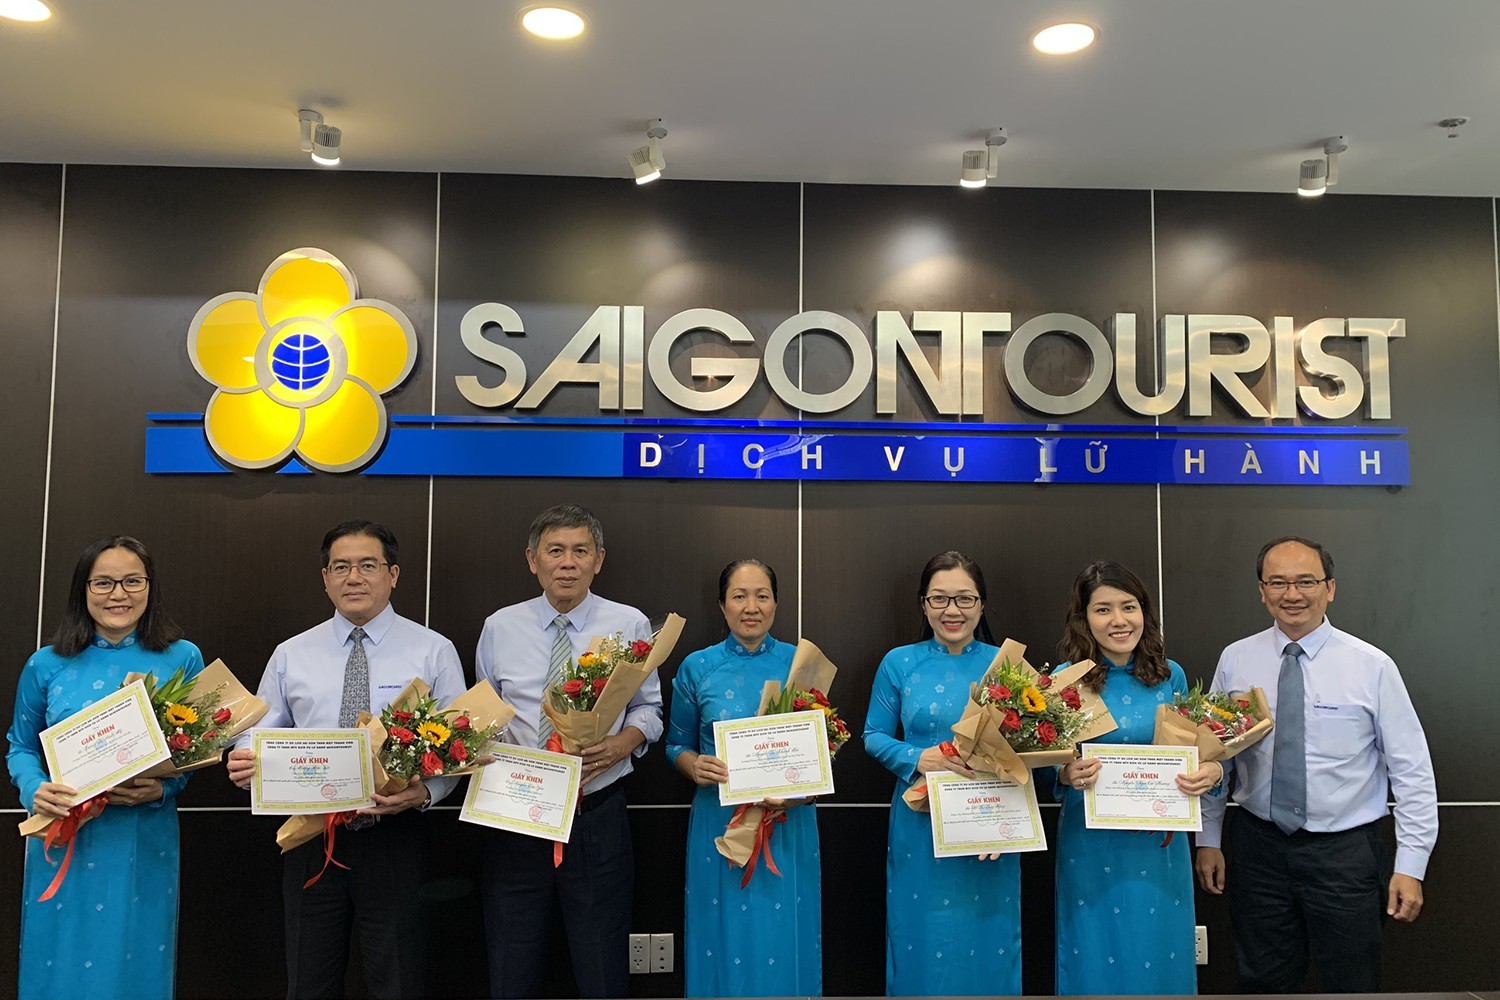 tour du lịch quốc tế - Saigon tourist 